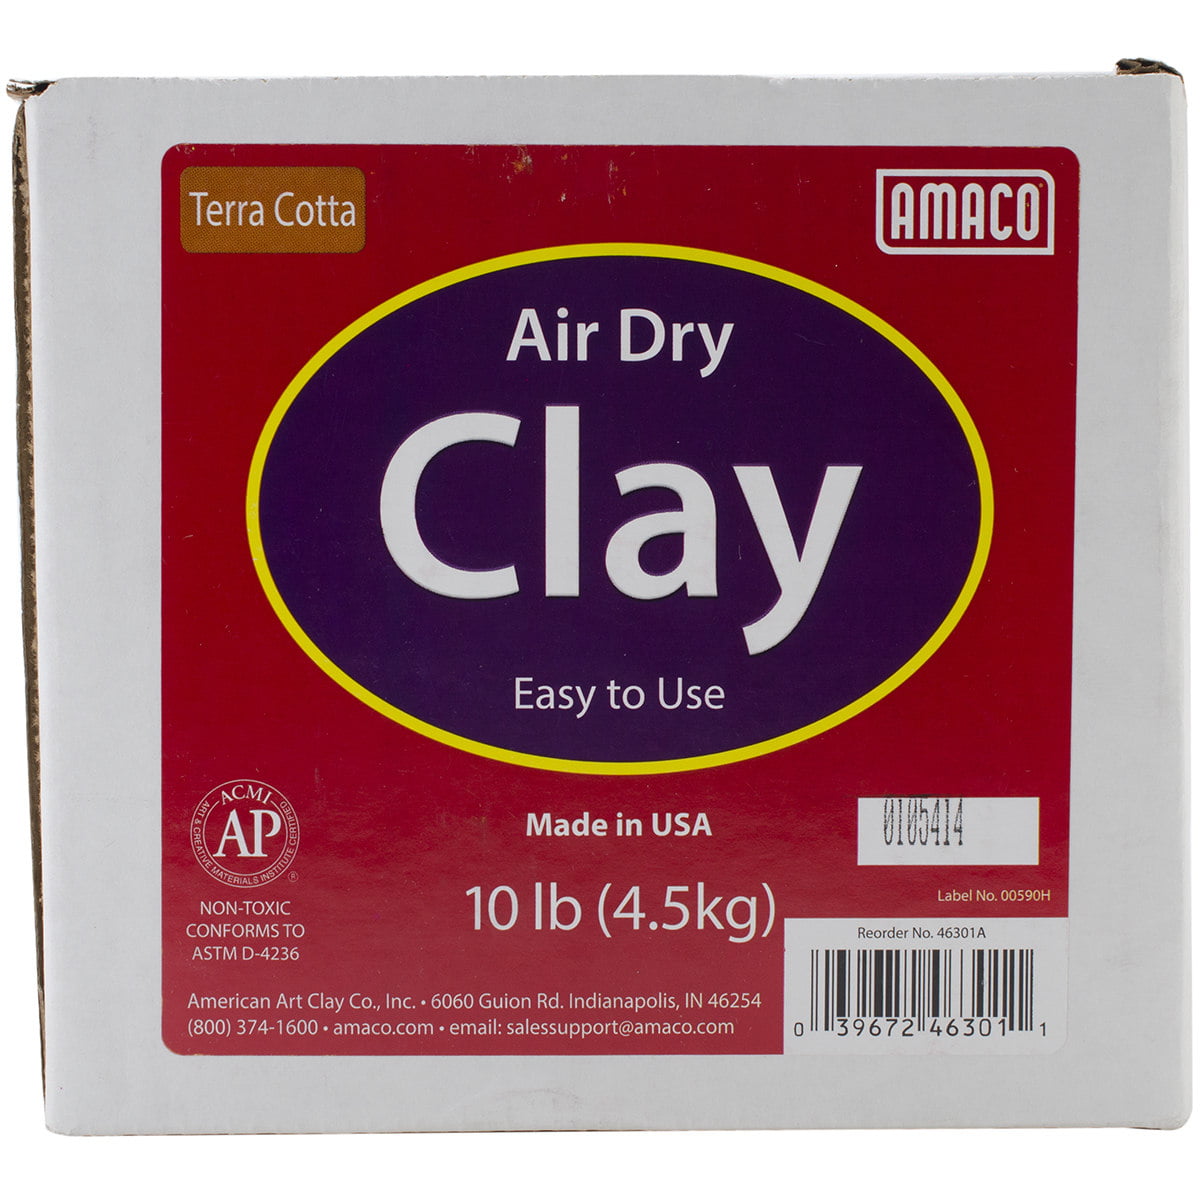 Air Dry Clay Terra Cotta – 10 lb